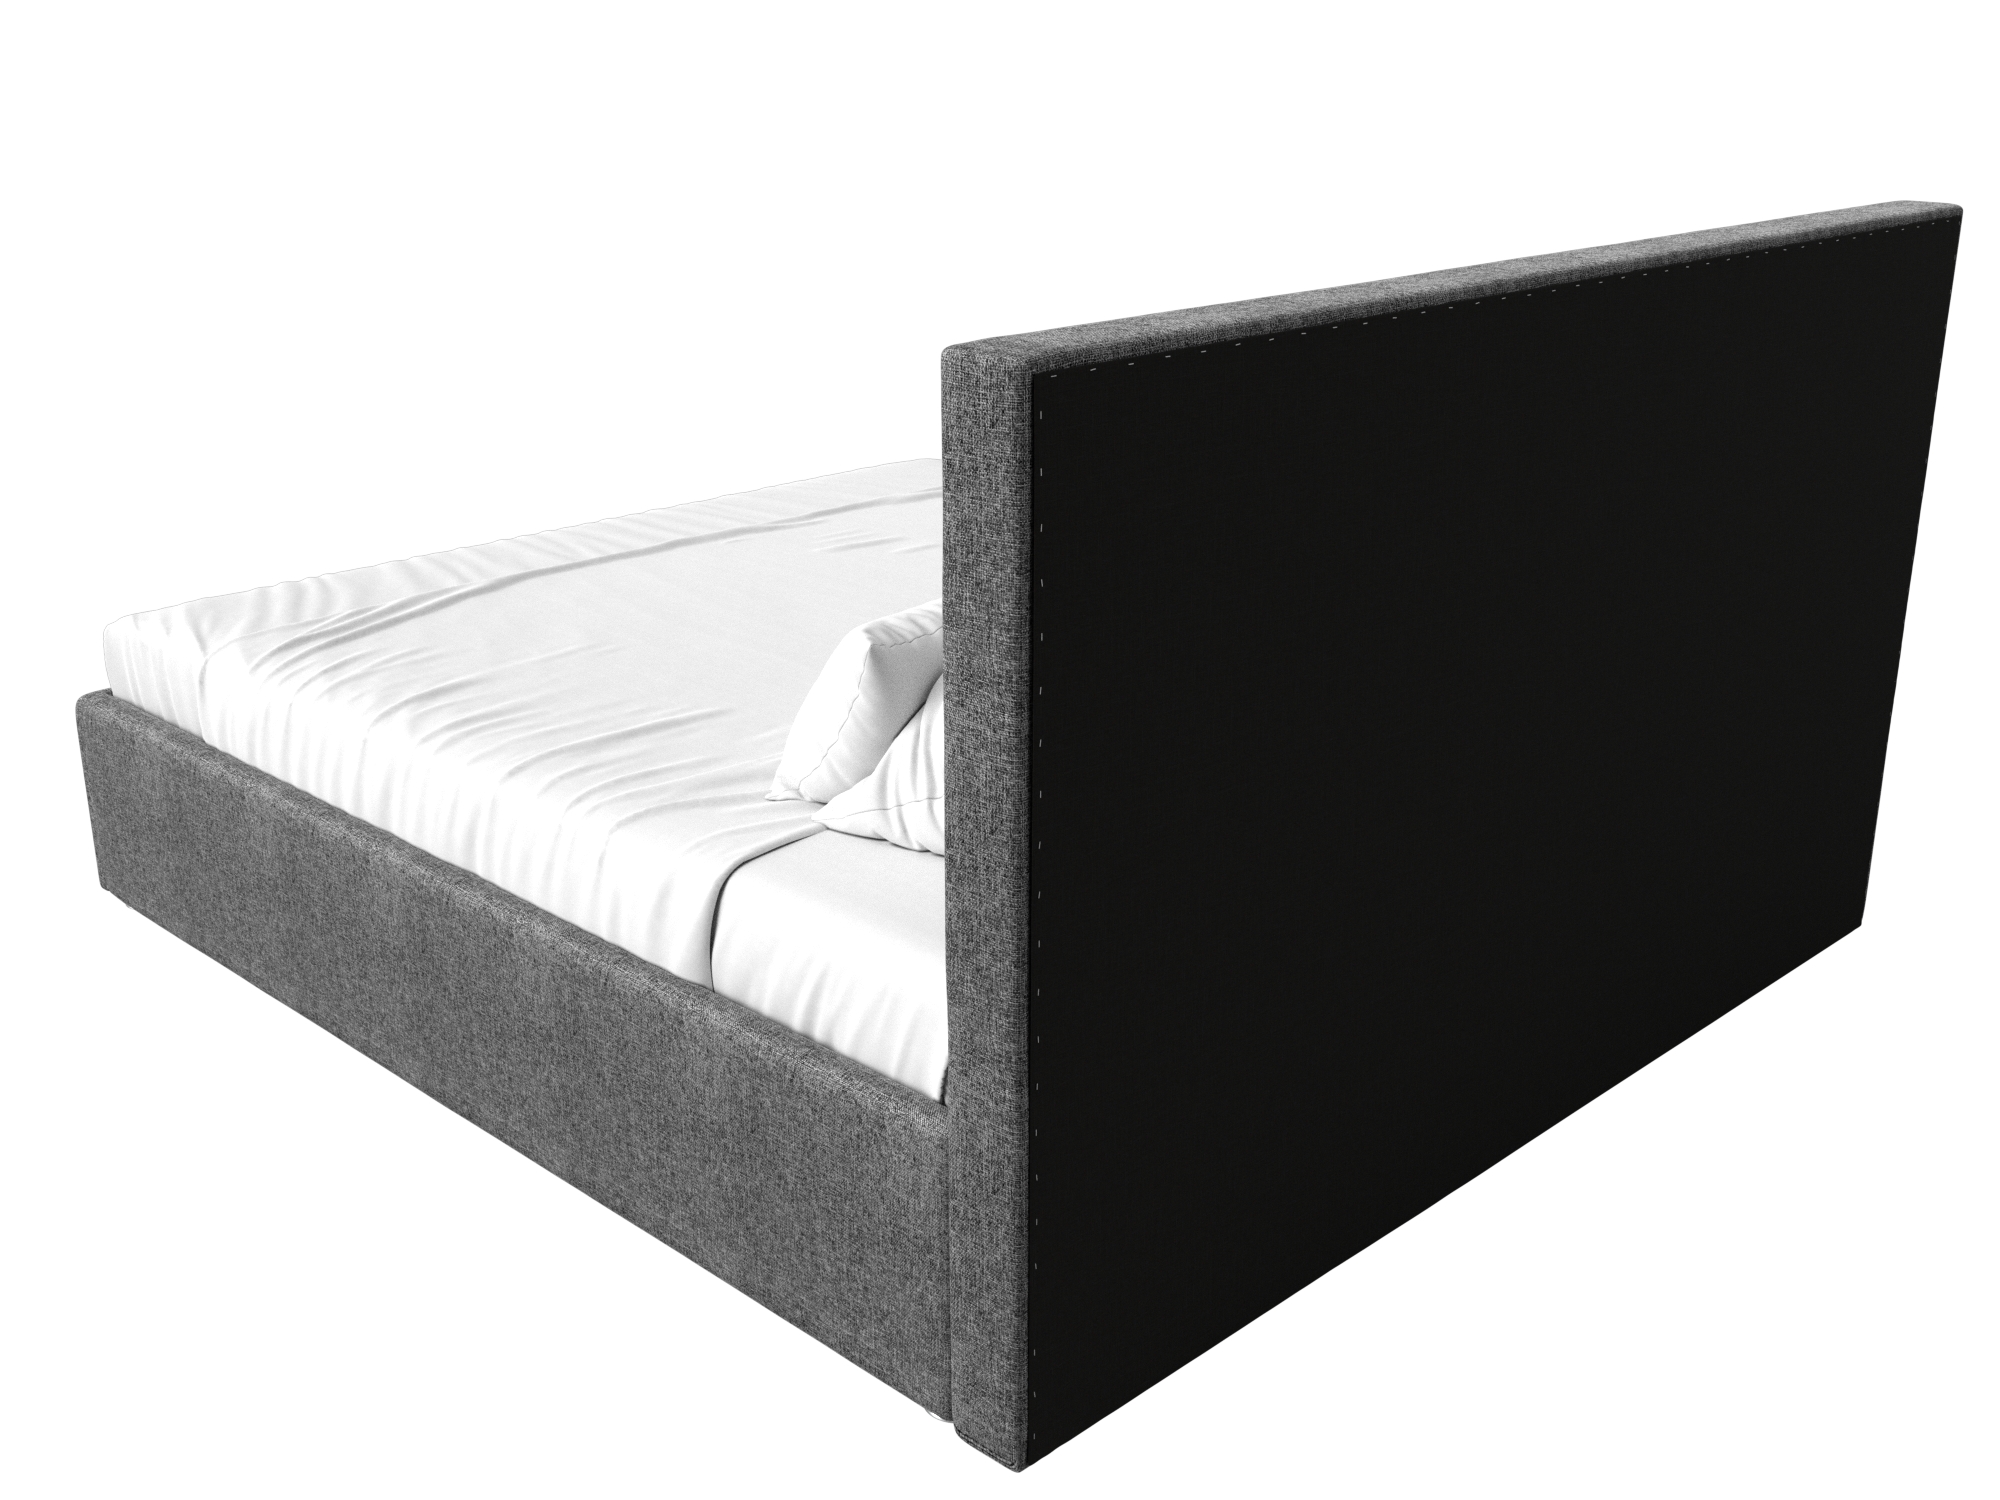 Интерьерная кровать Кариба 200 (Серый)